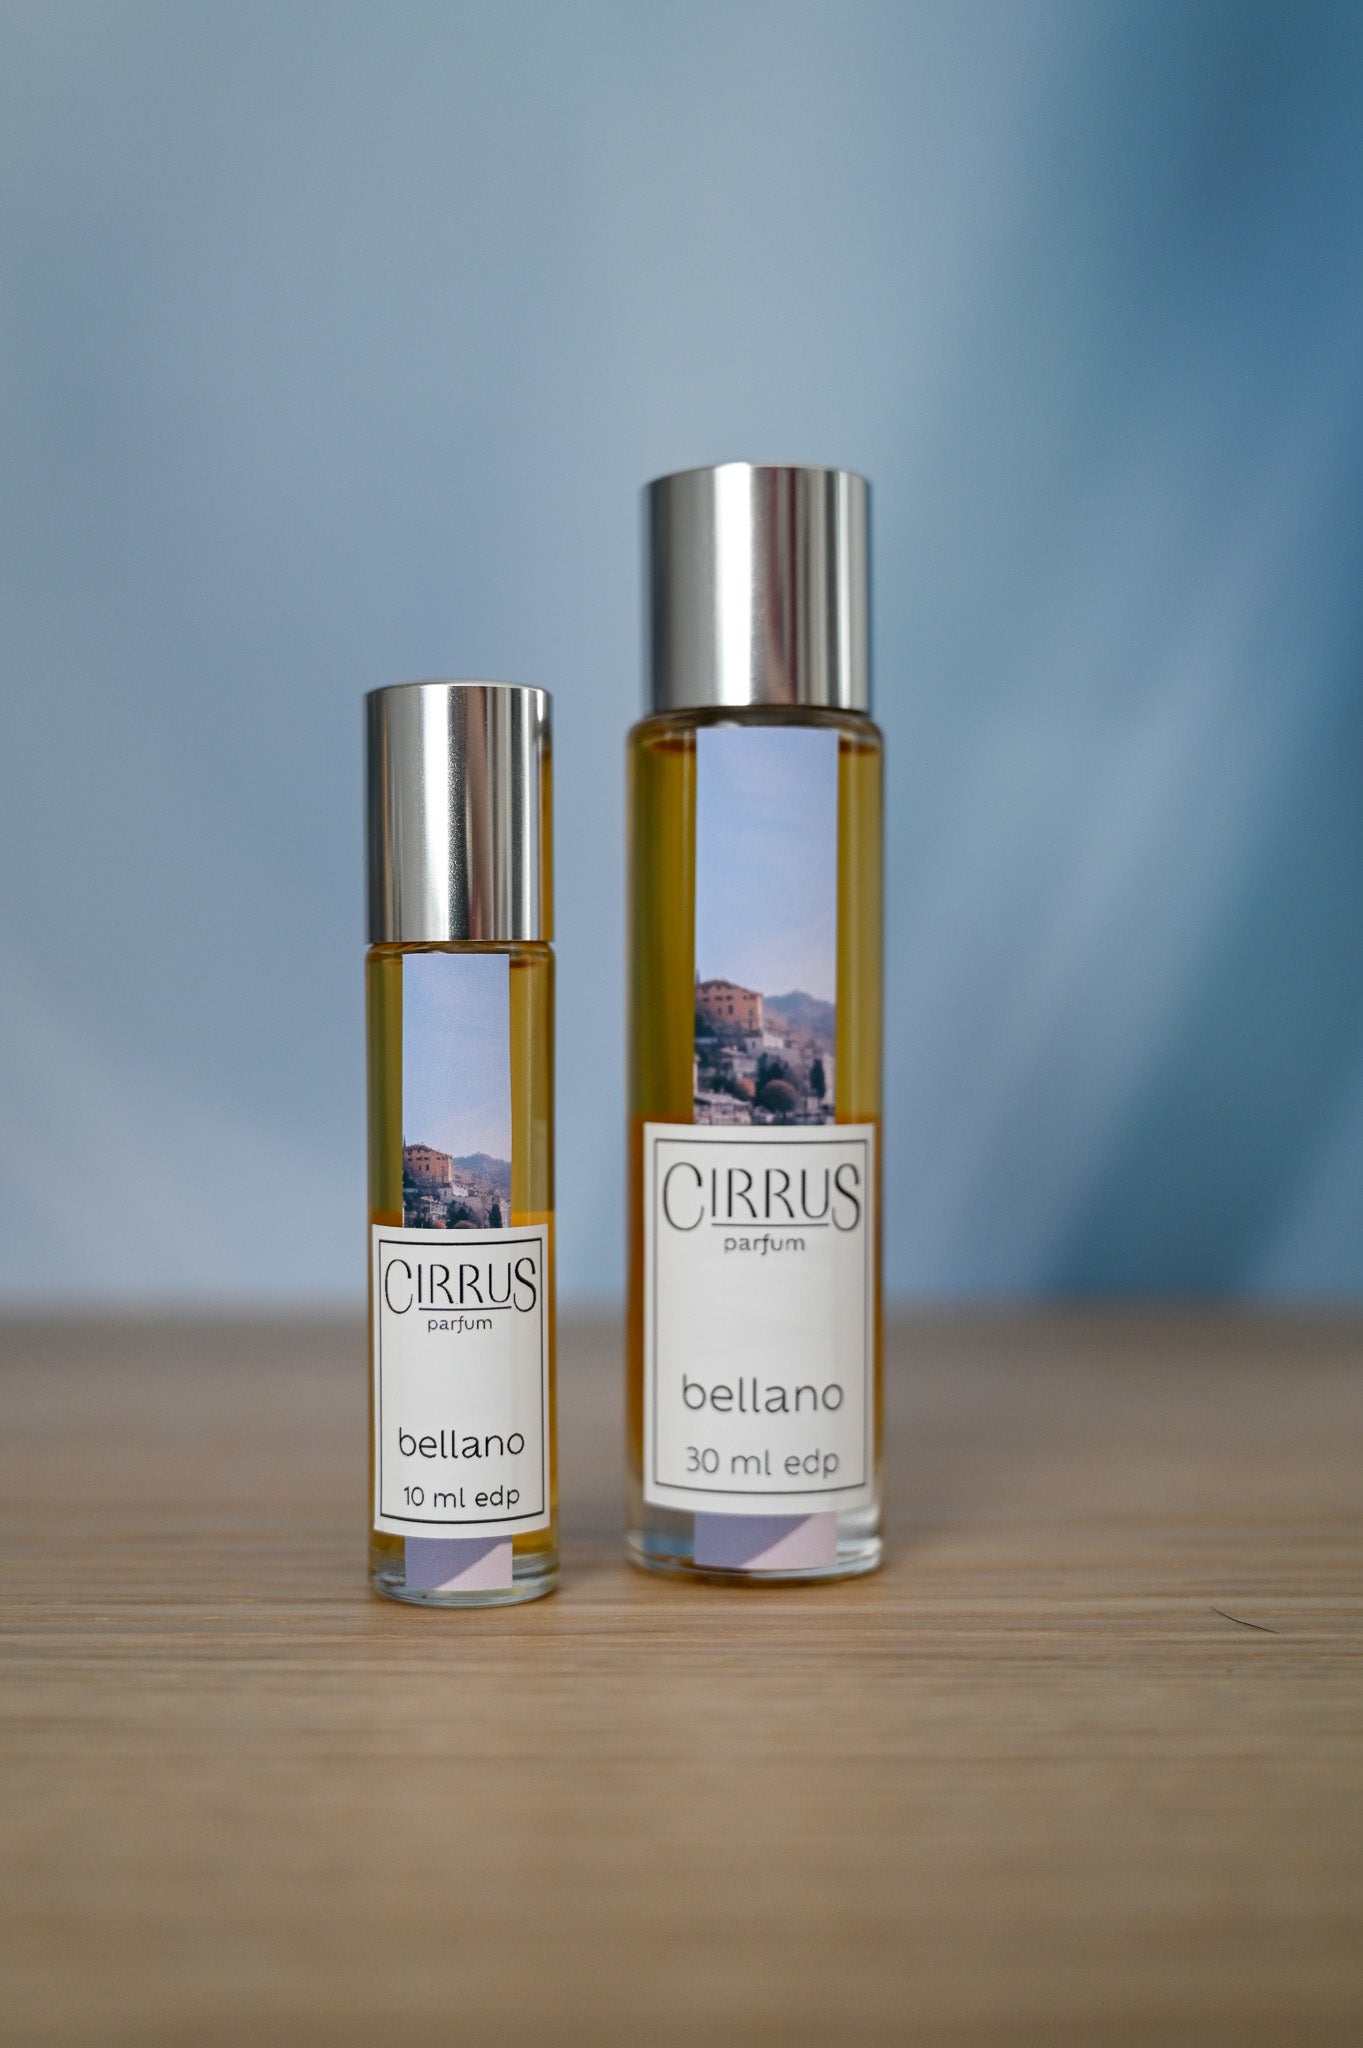 Products – Cirrus Parfum